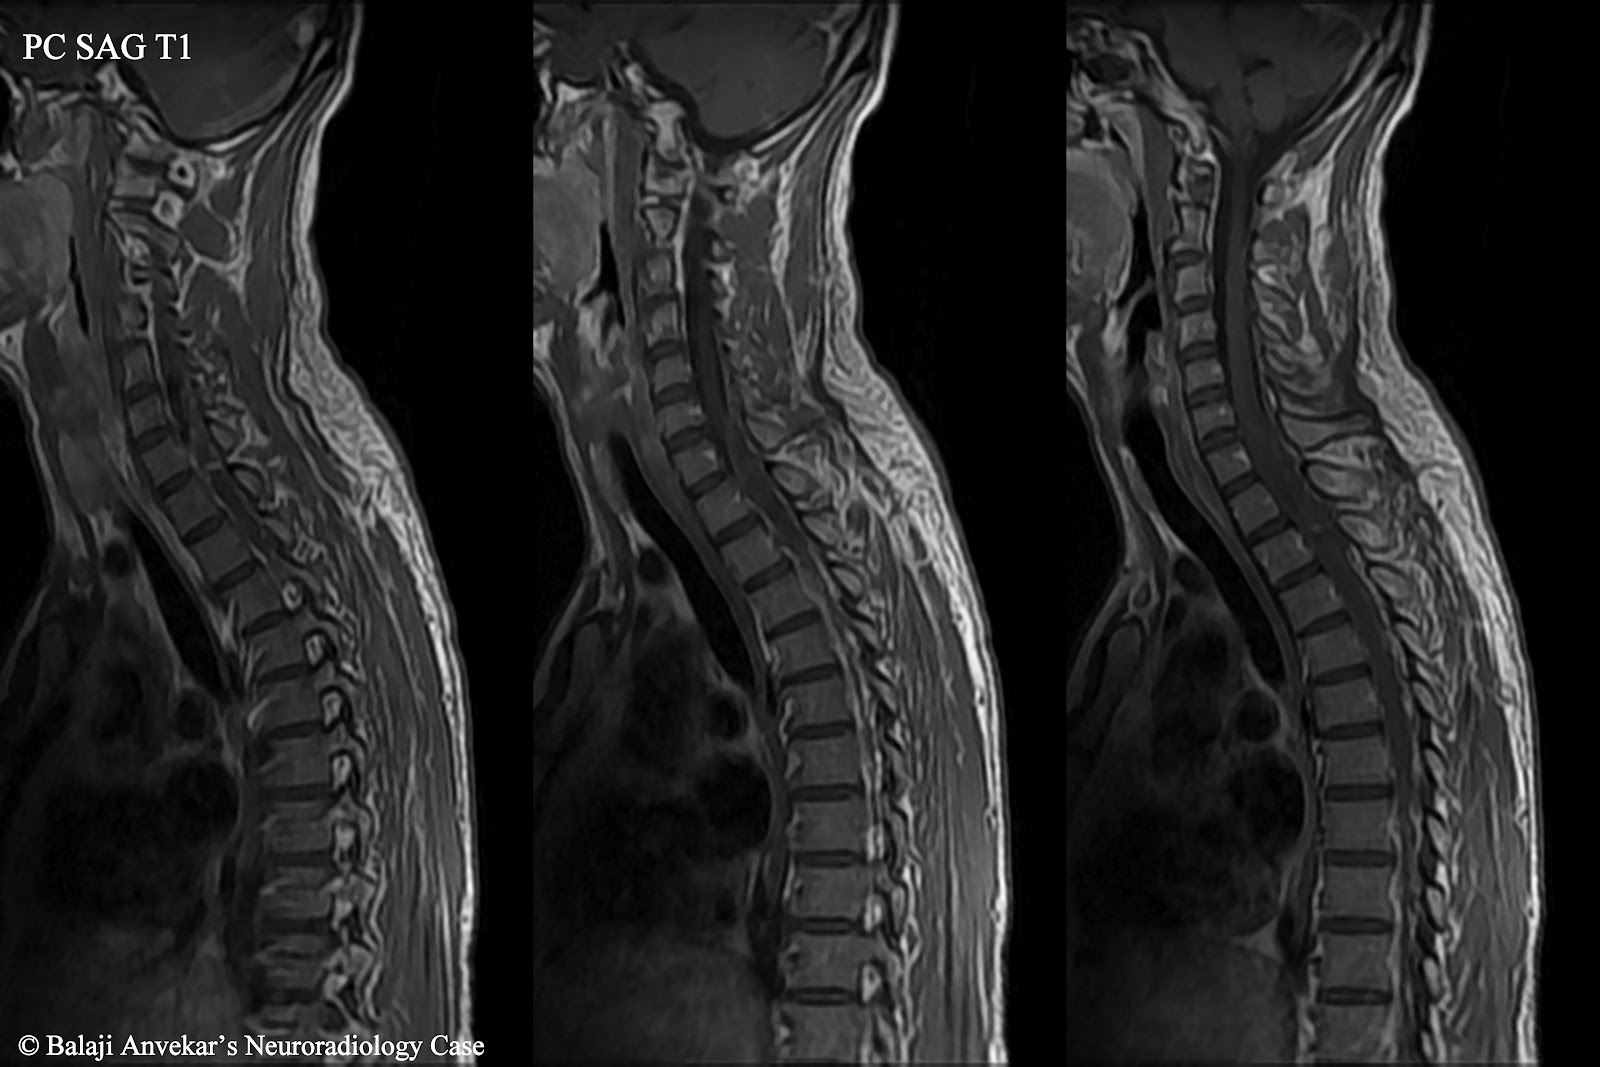 Lumbar Spine: Cpt Mri Lumbar Spine Without Contrast